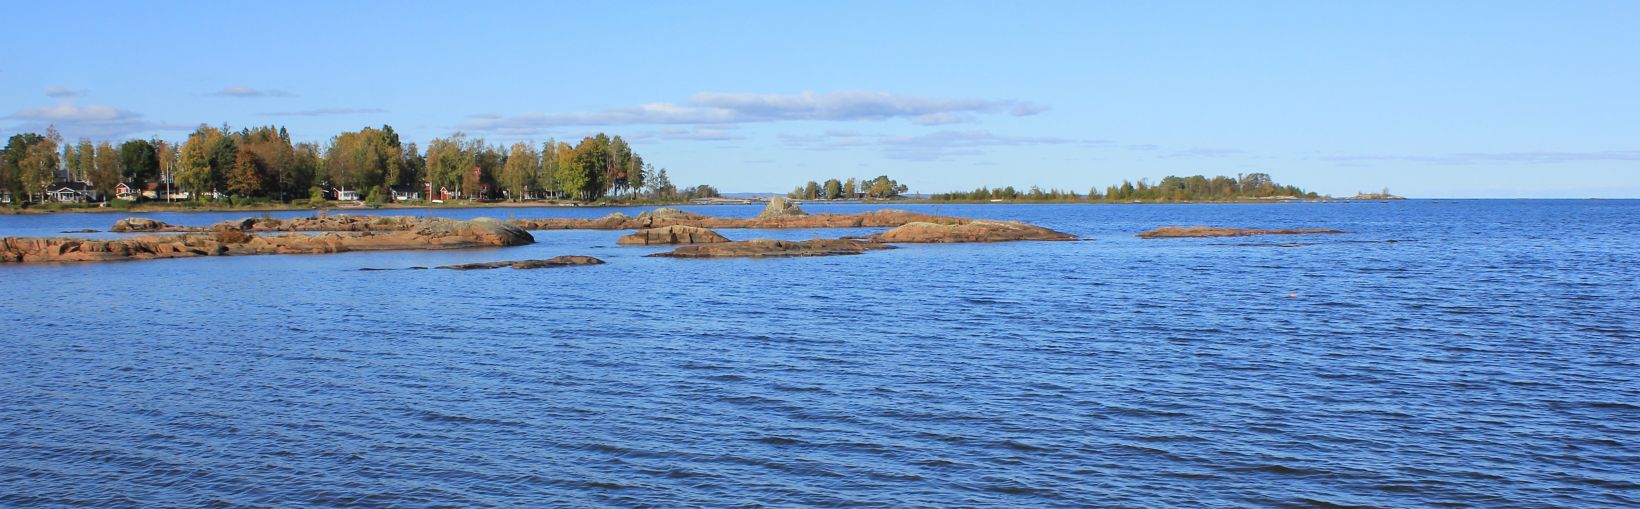 Landscape at the shore of Lake Vanern, Sweden.